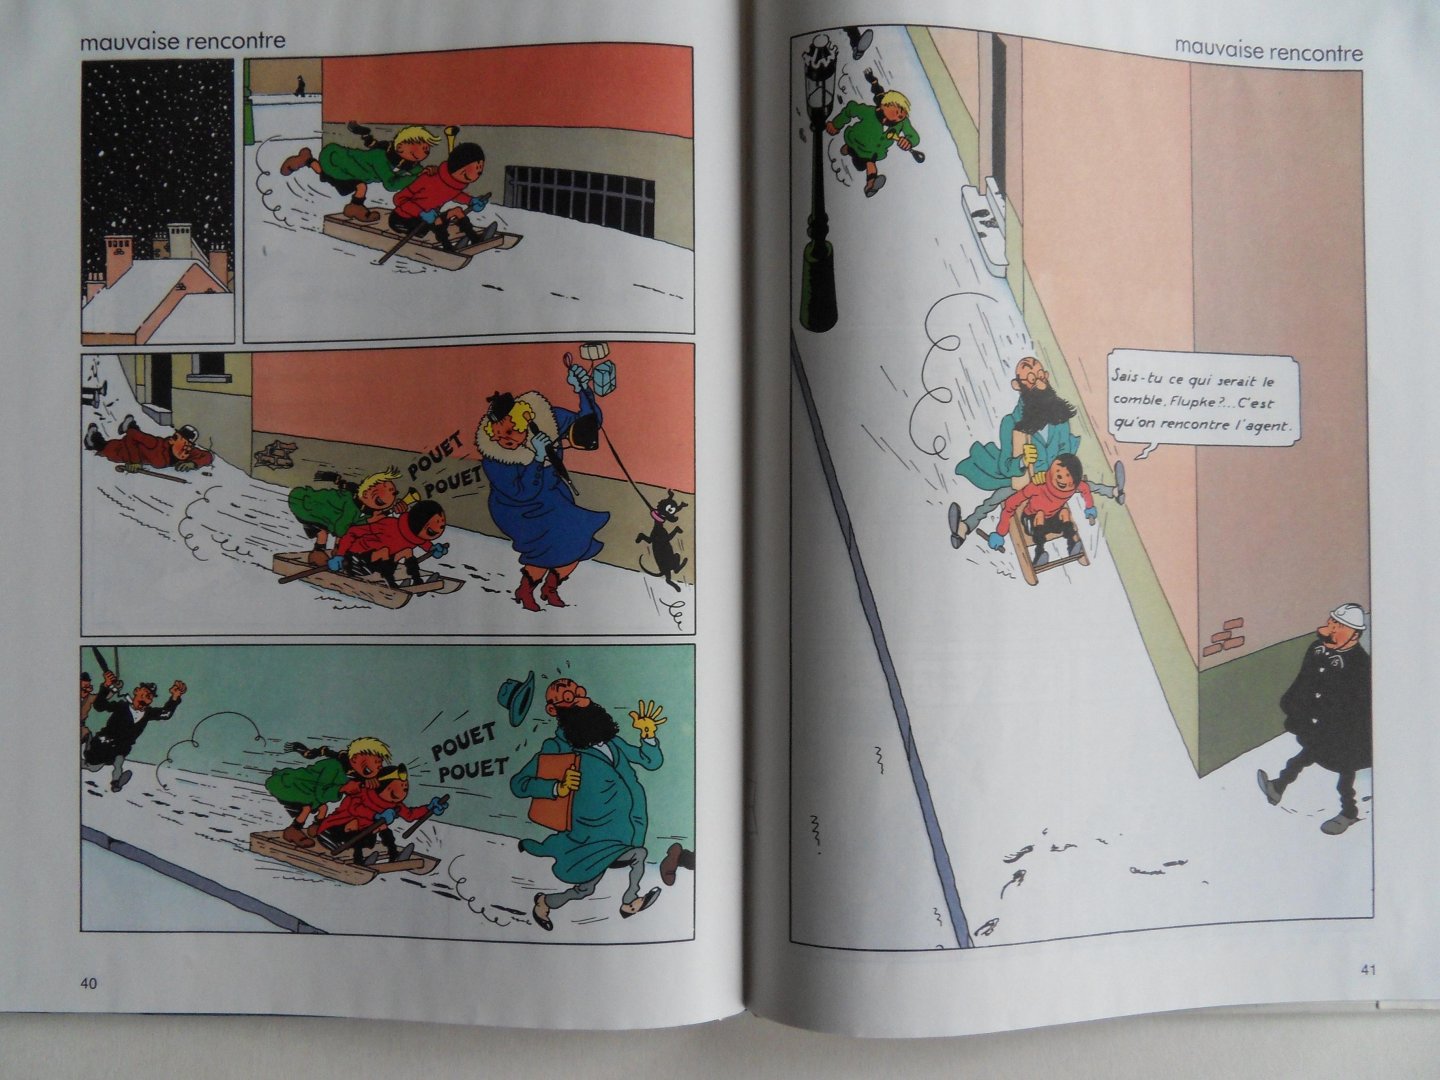 Hergé [ in samenwerking met Johan de Moor ]. - Quick & Flupke. - Pardon Madame.